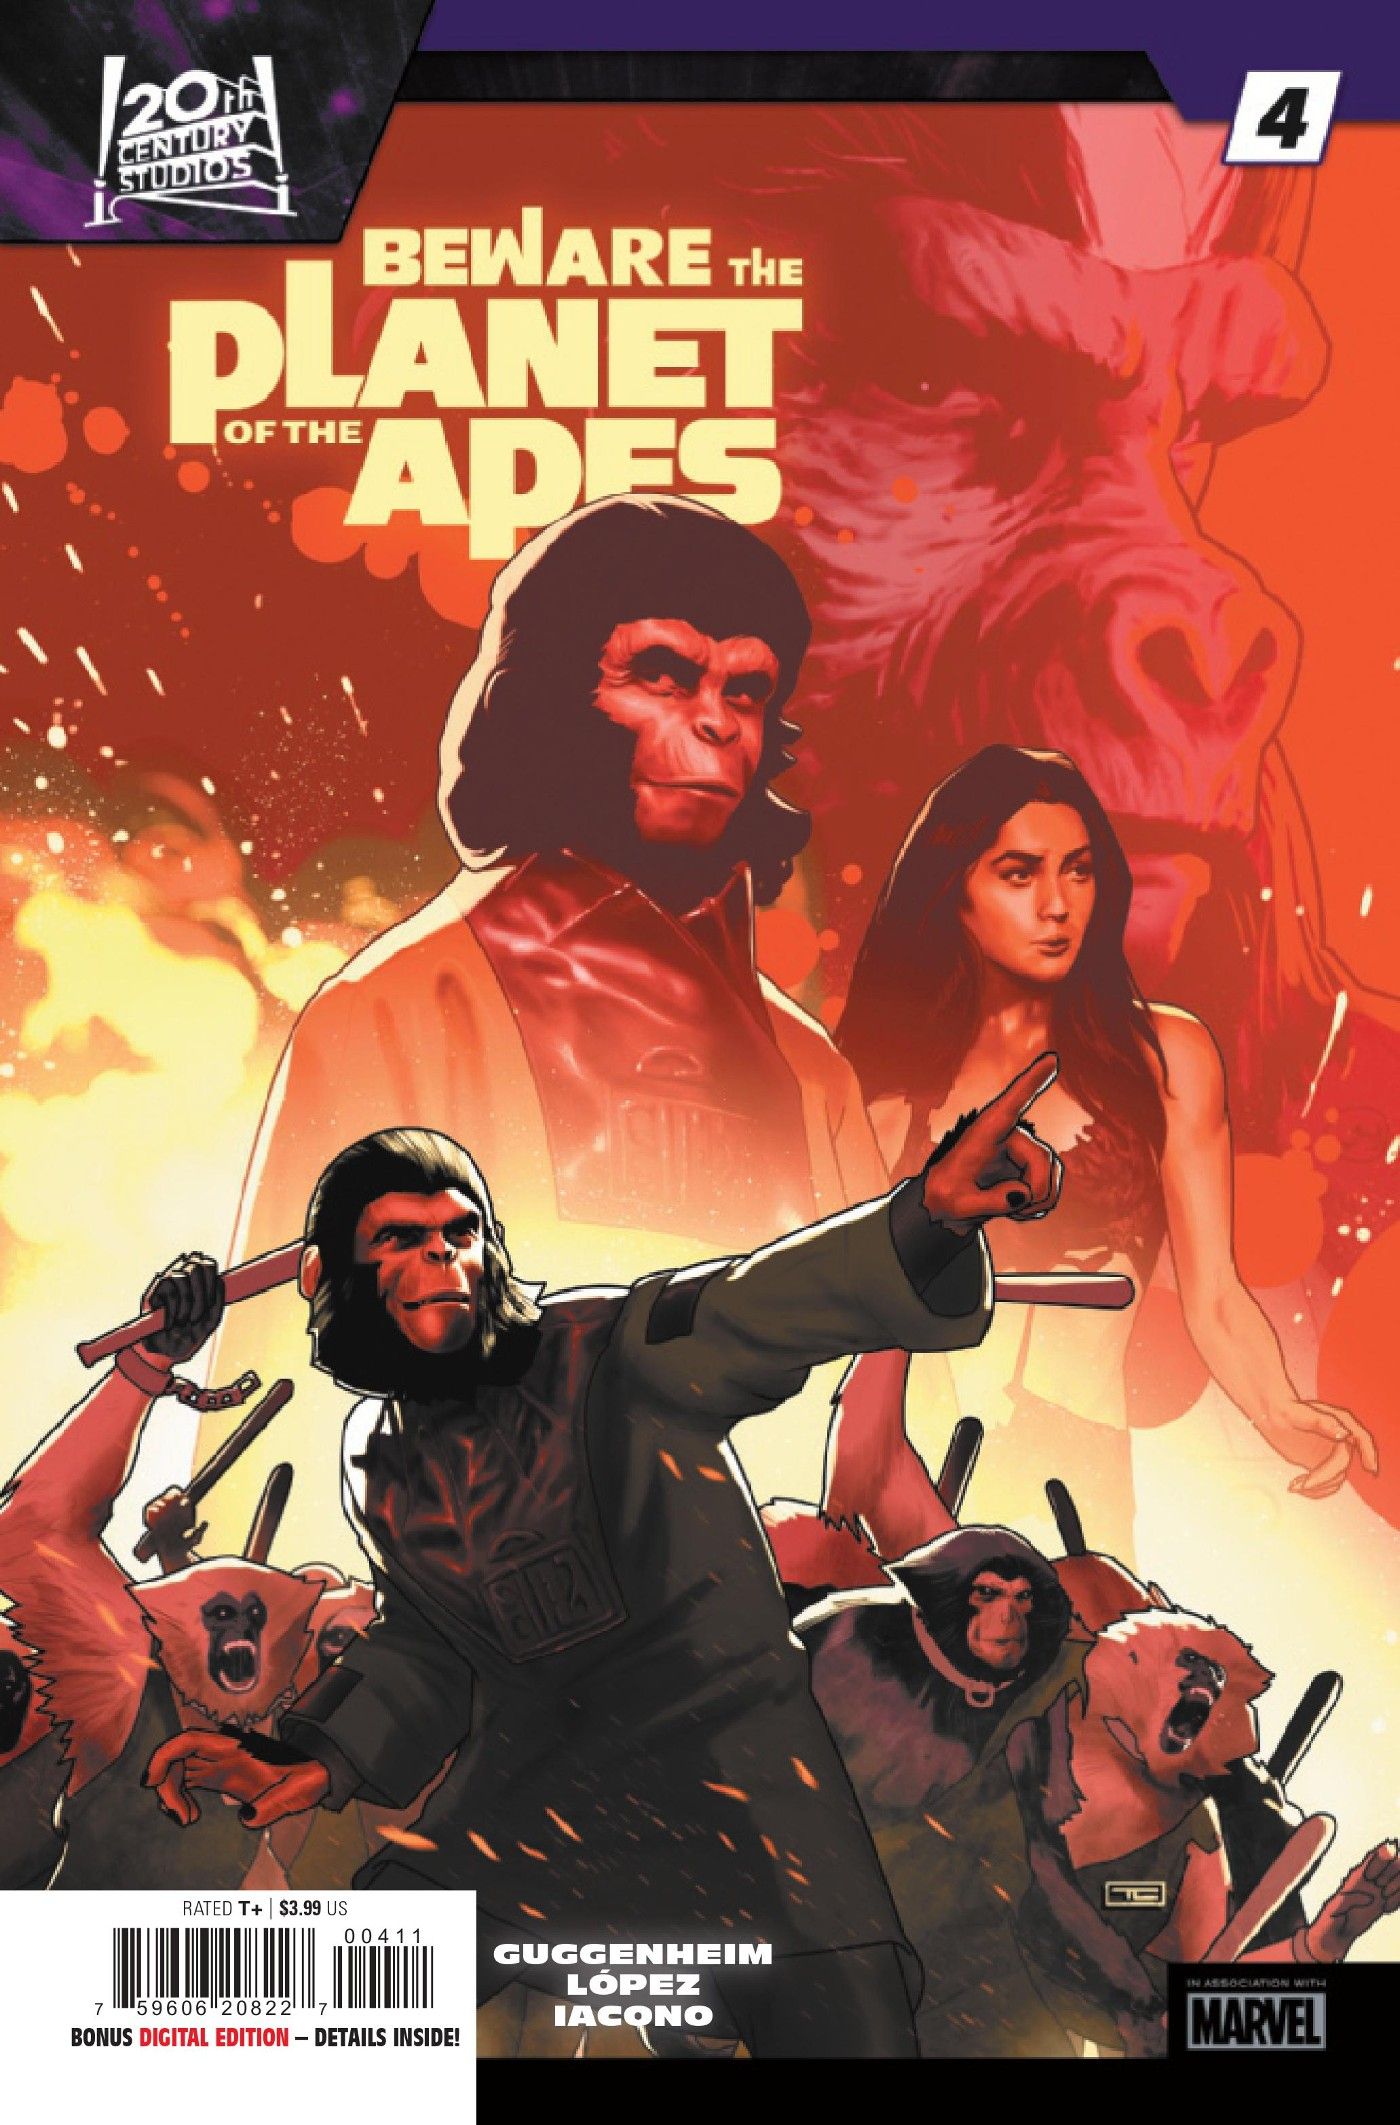 Cuidado com a capa do Planeta dos Macacos # 4, Zira liderando um exército de bonobos rebeldes em um cenário de fogo